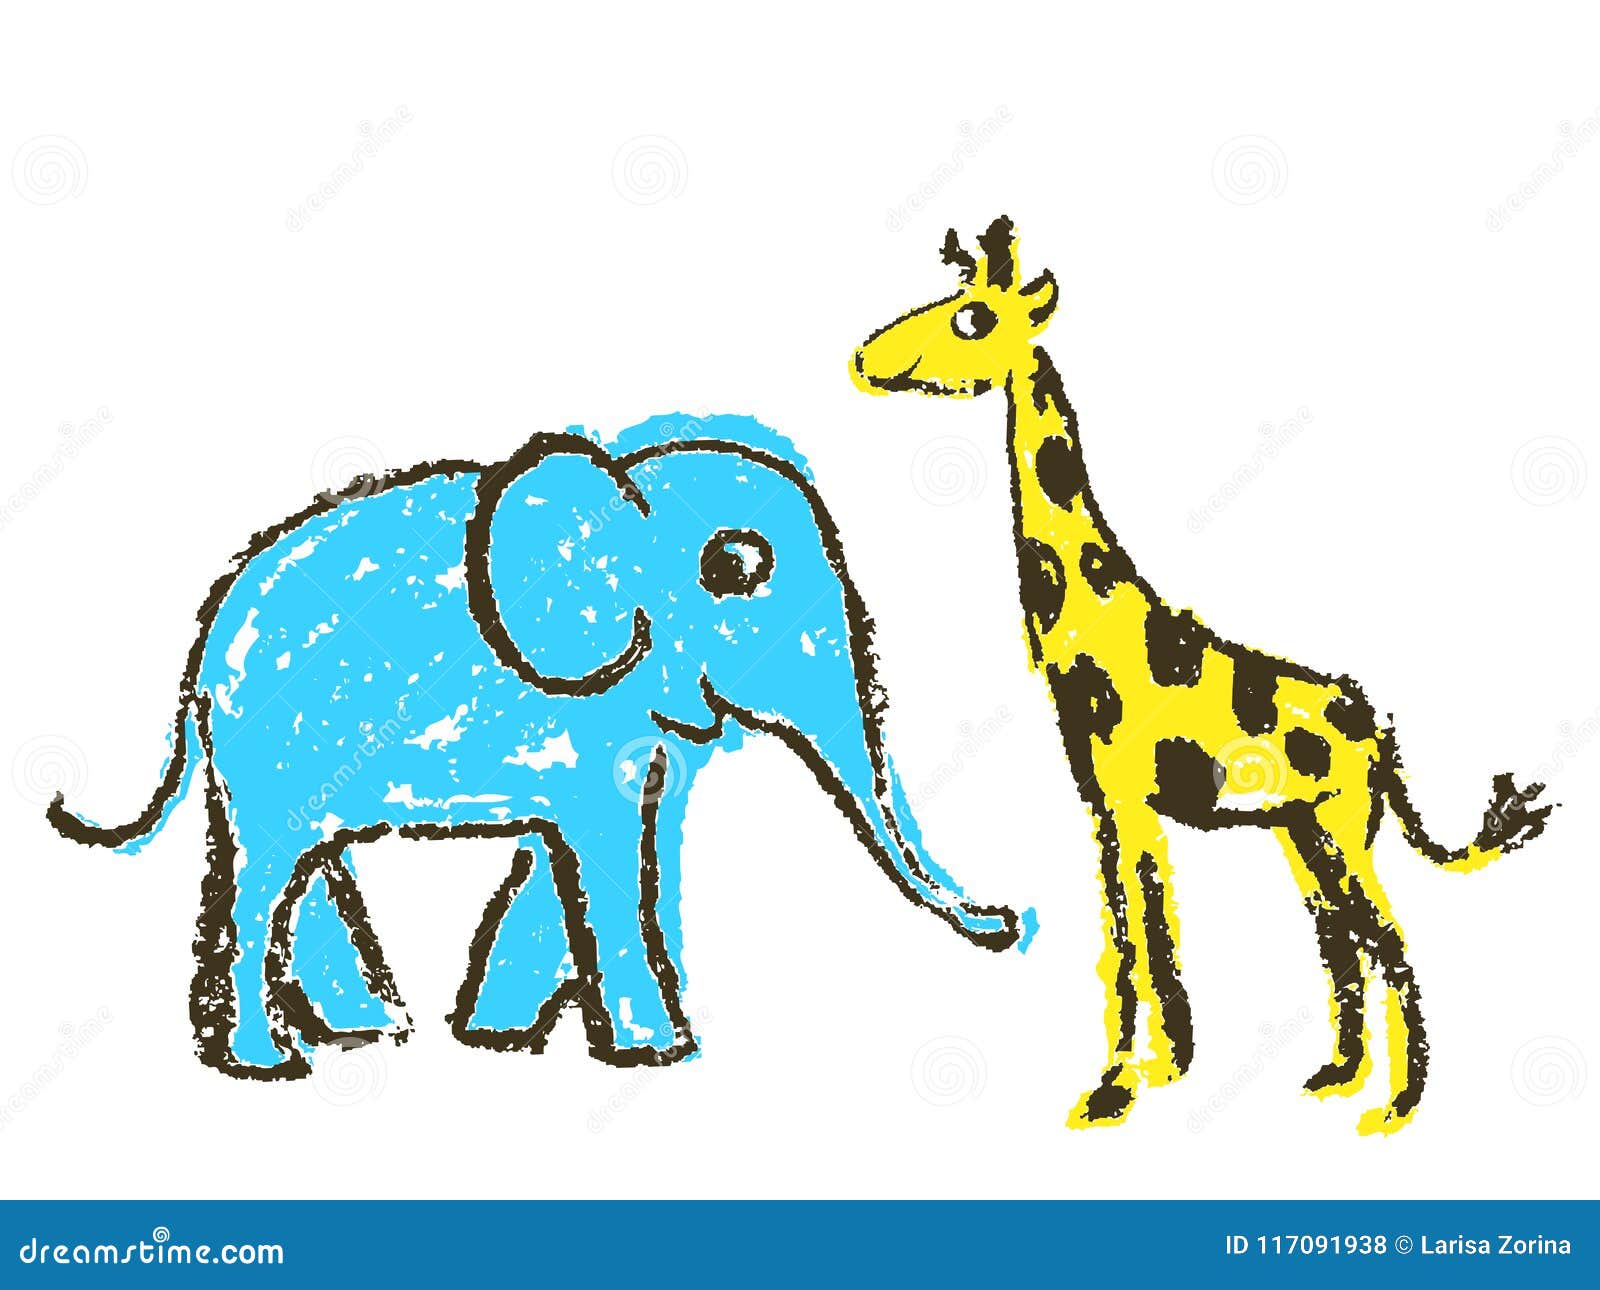 Рисование Жираф и слон